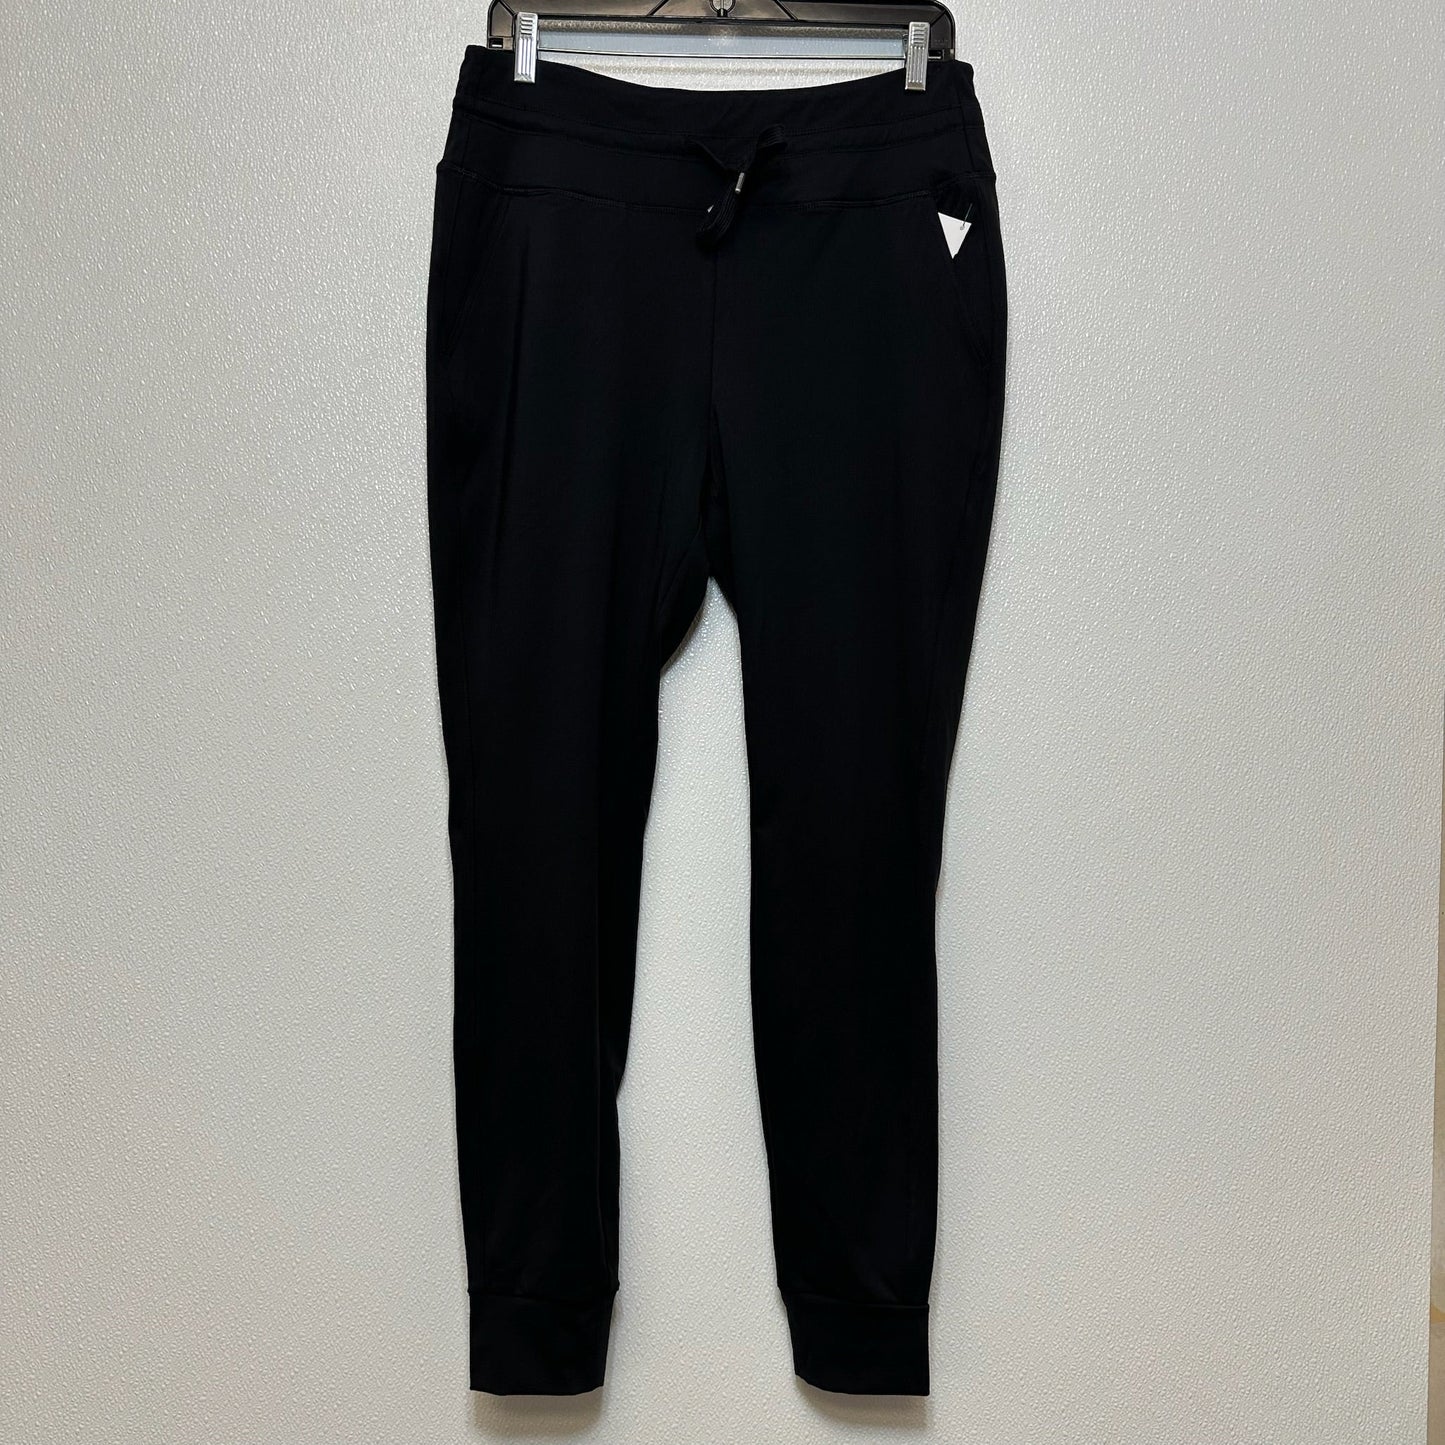 Black Athletic Pants Clothes Mentor, Size L